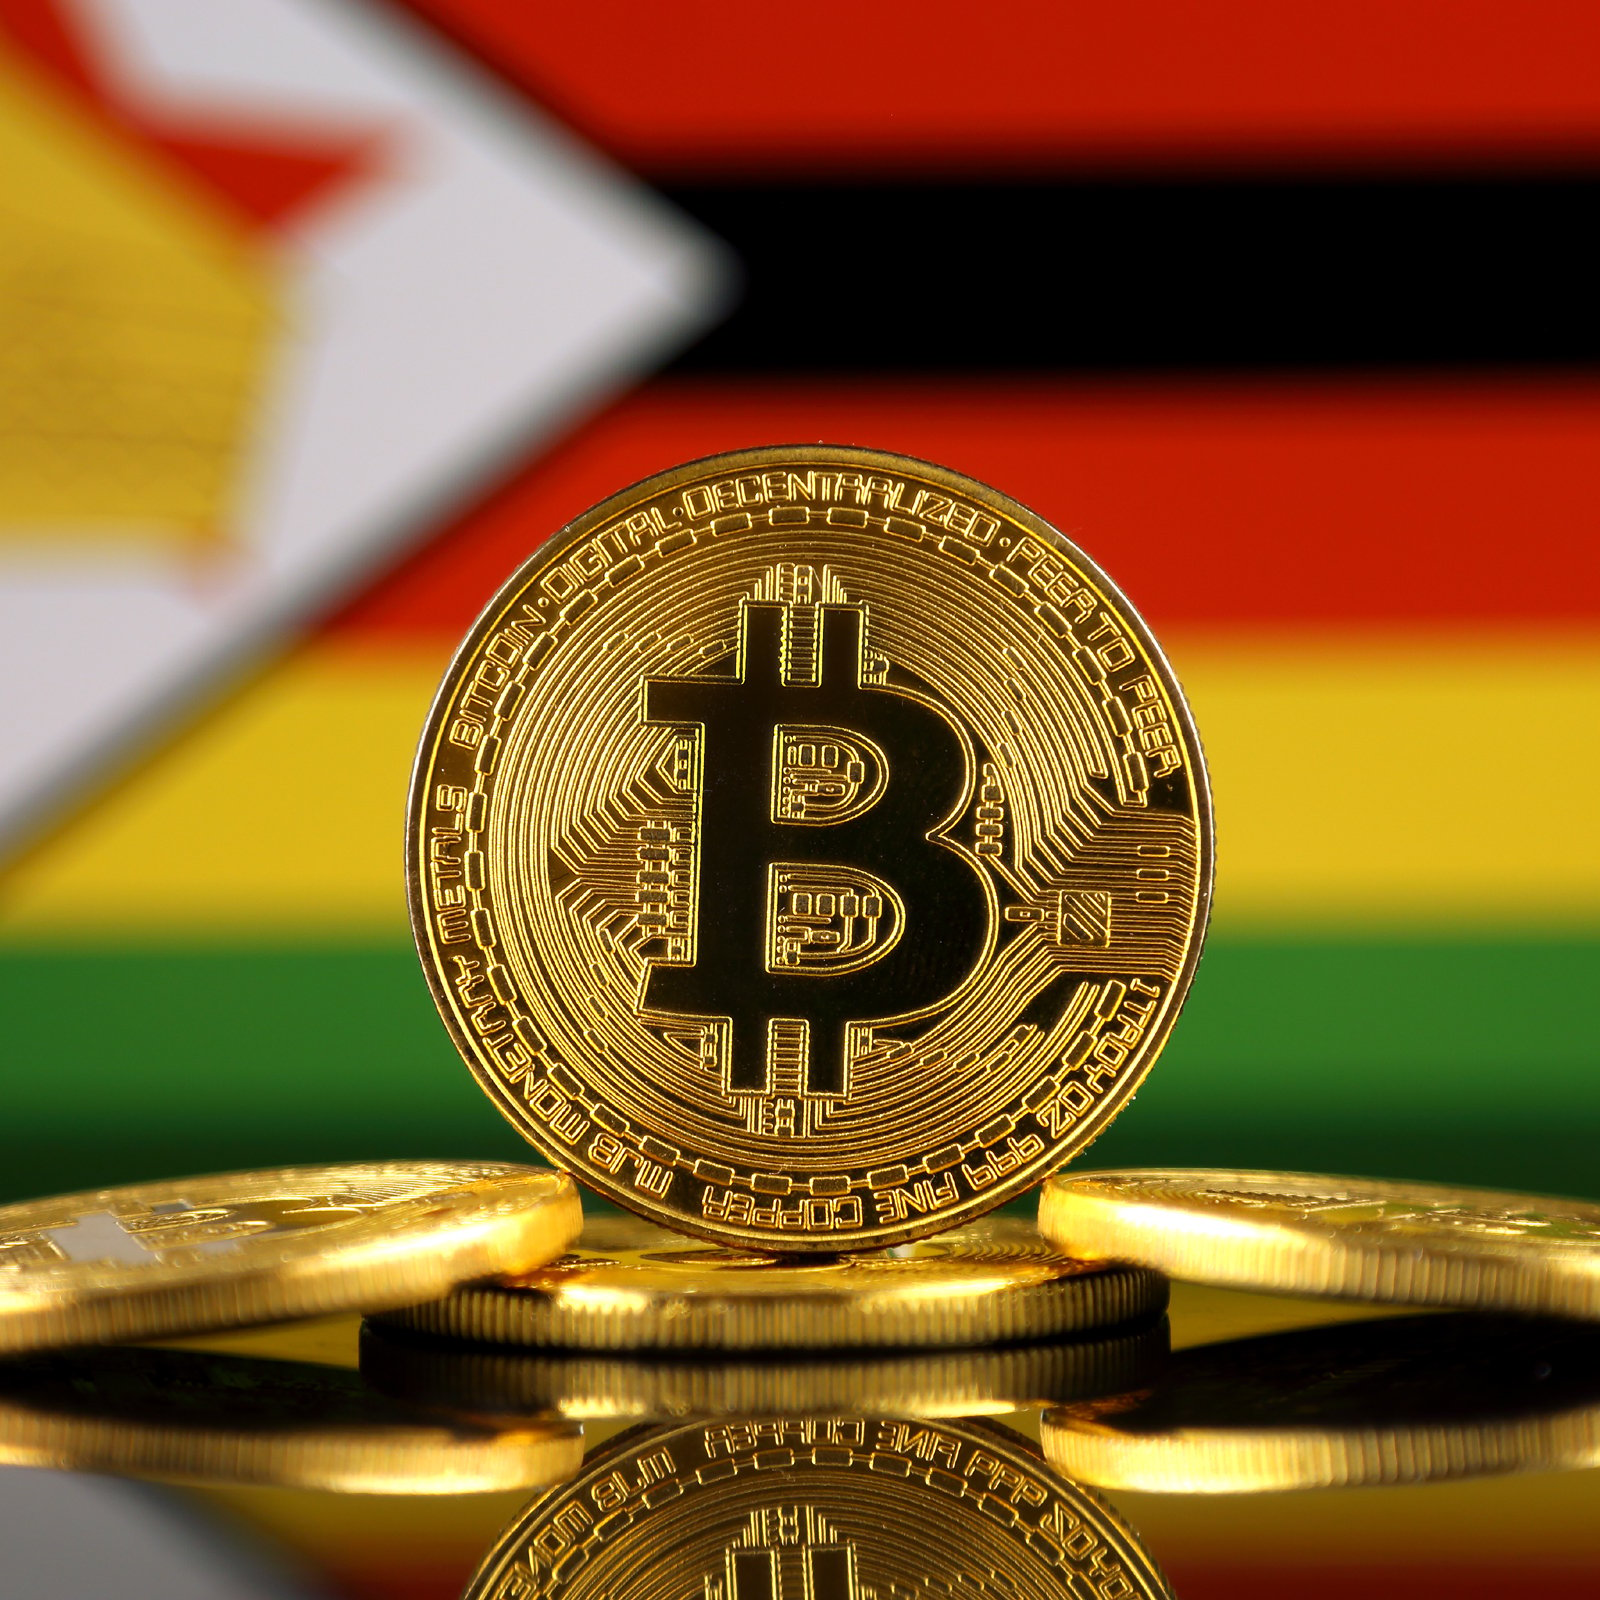 Bitcoin kursas ir kitimo grafikas, Zimbabvės kriptovaliuta